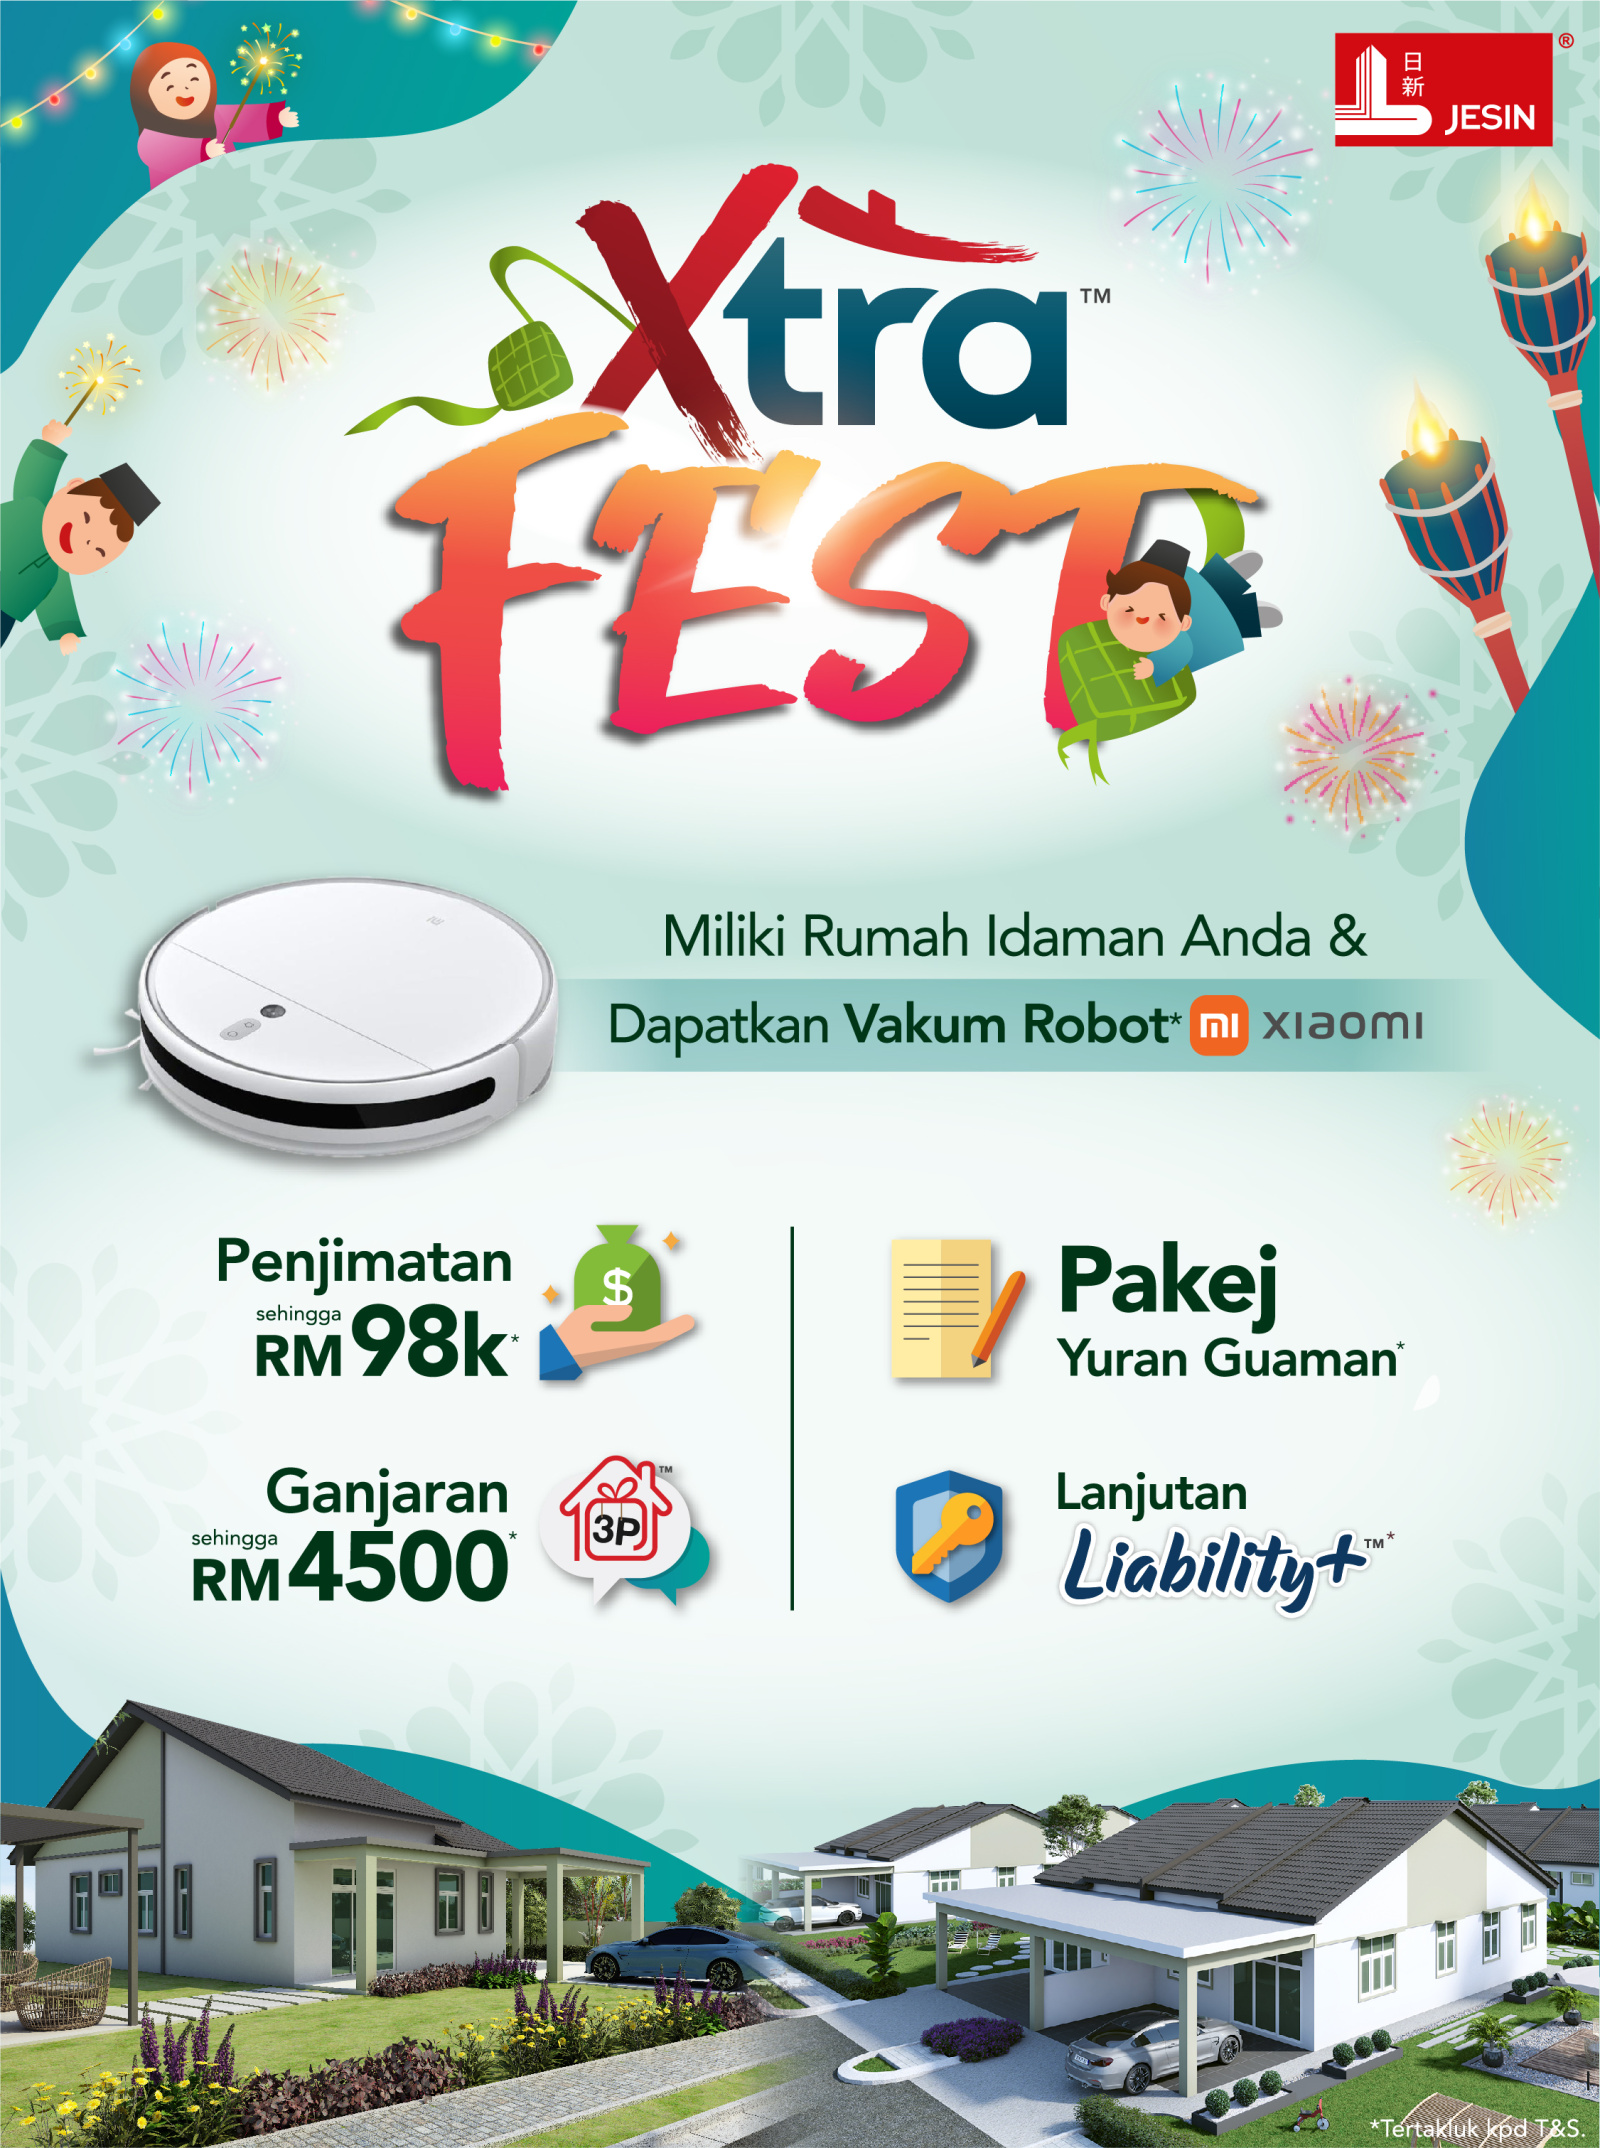 Xtra™ Fest